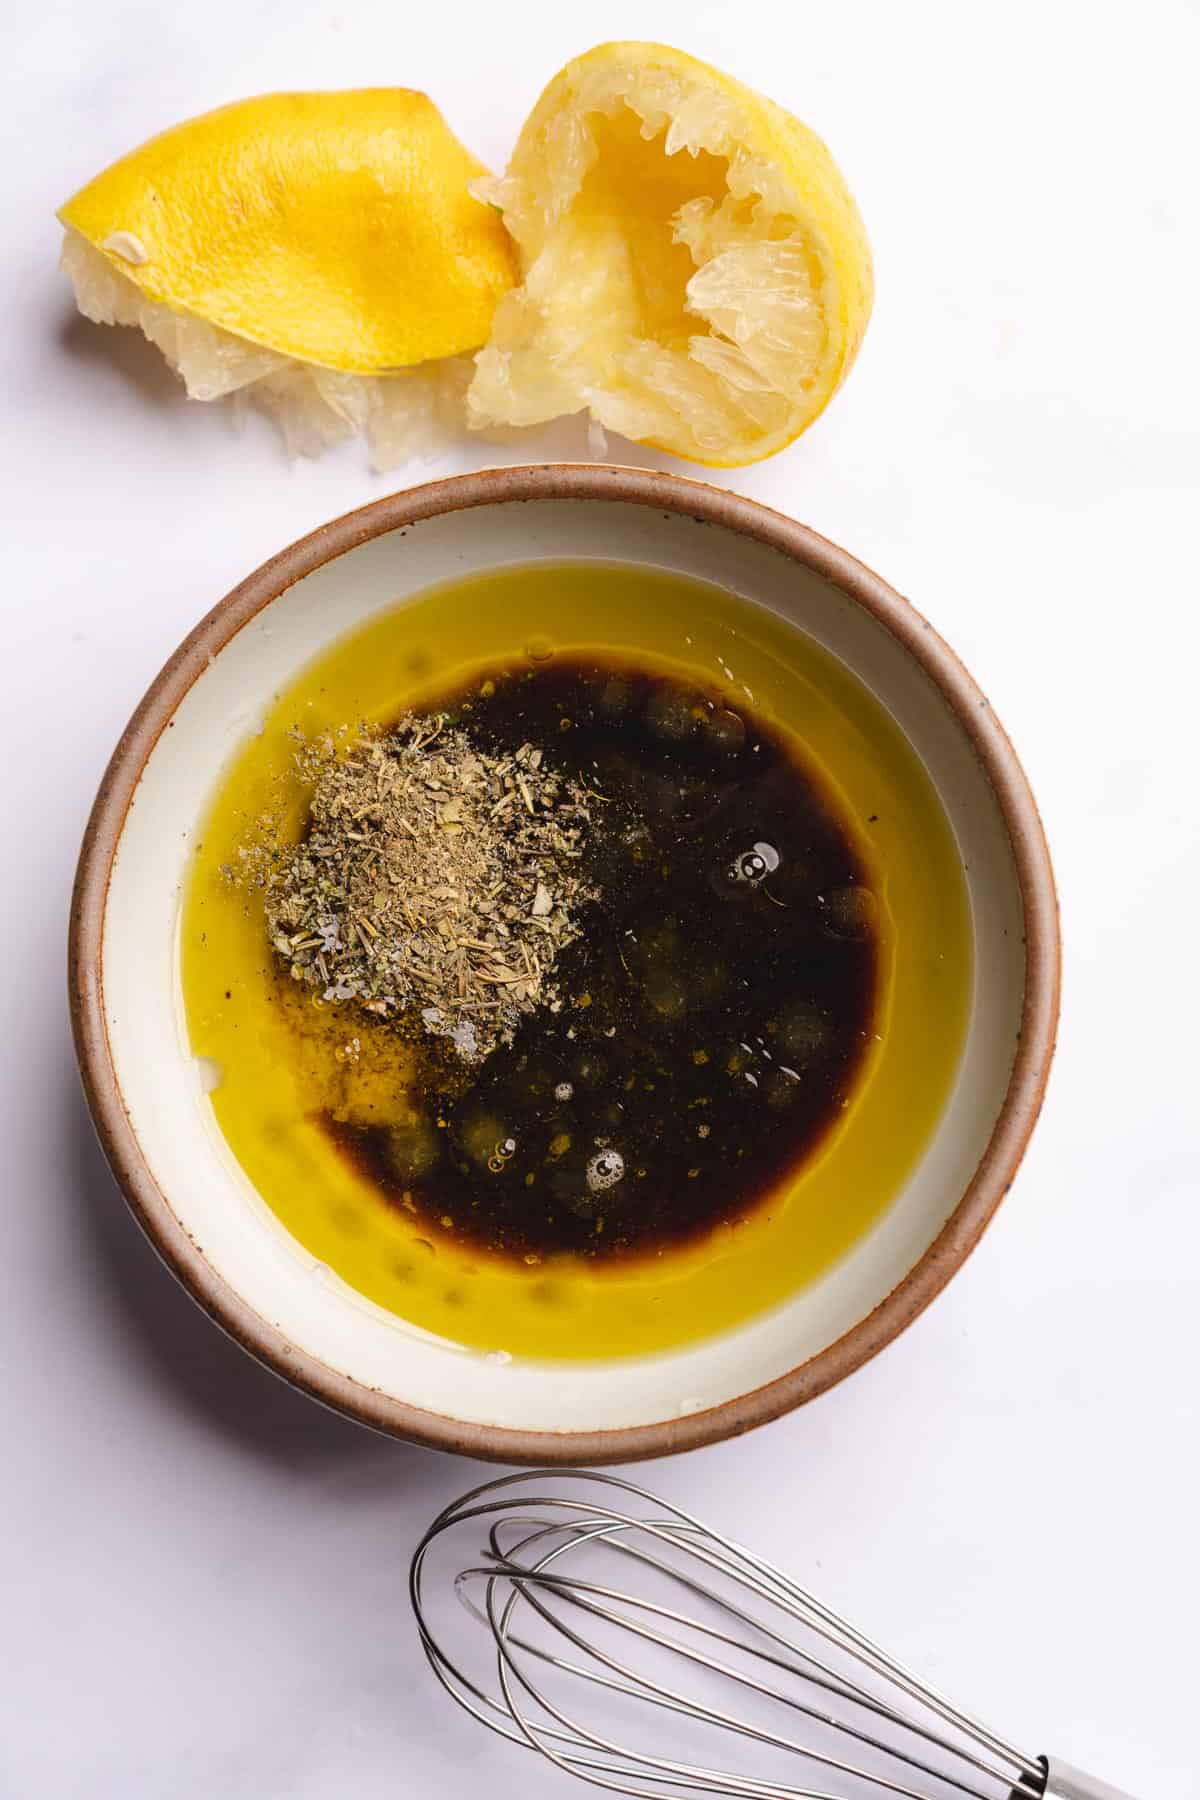 olive oil, lemon juice, balsamic vinegar, salt, pepper and italian seasoning in a bowl